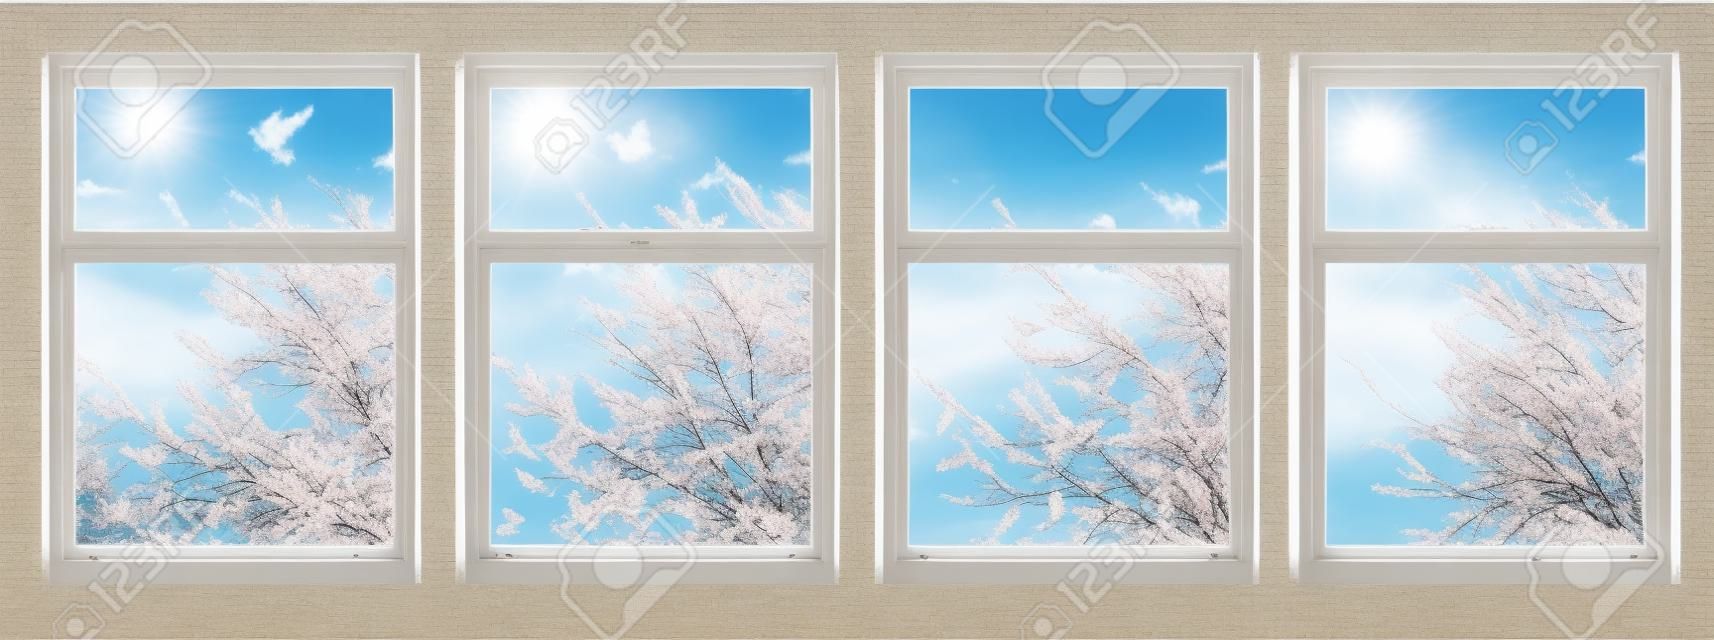 Four Season di Windows: Primavera, Estate, Autunno e Inverno